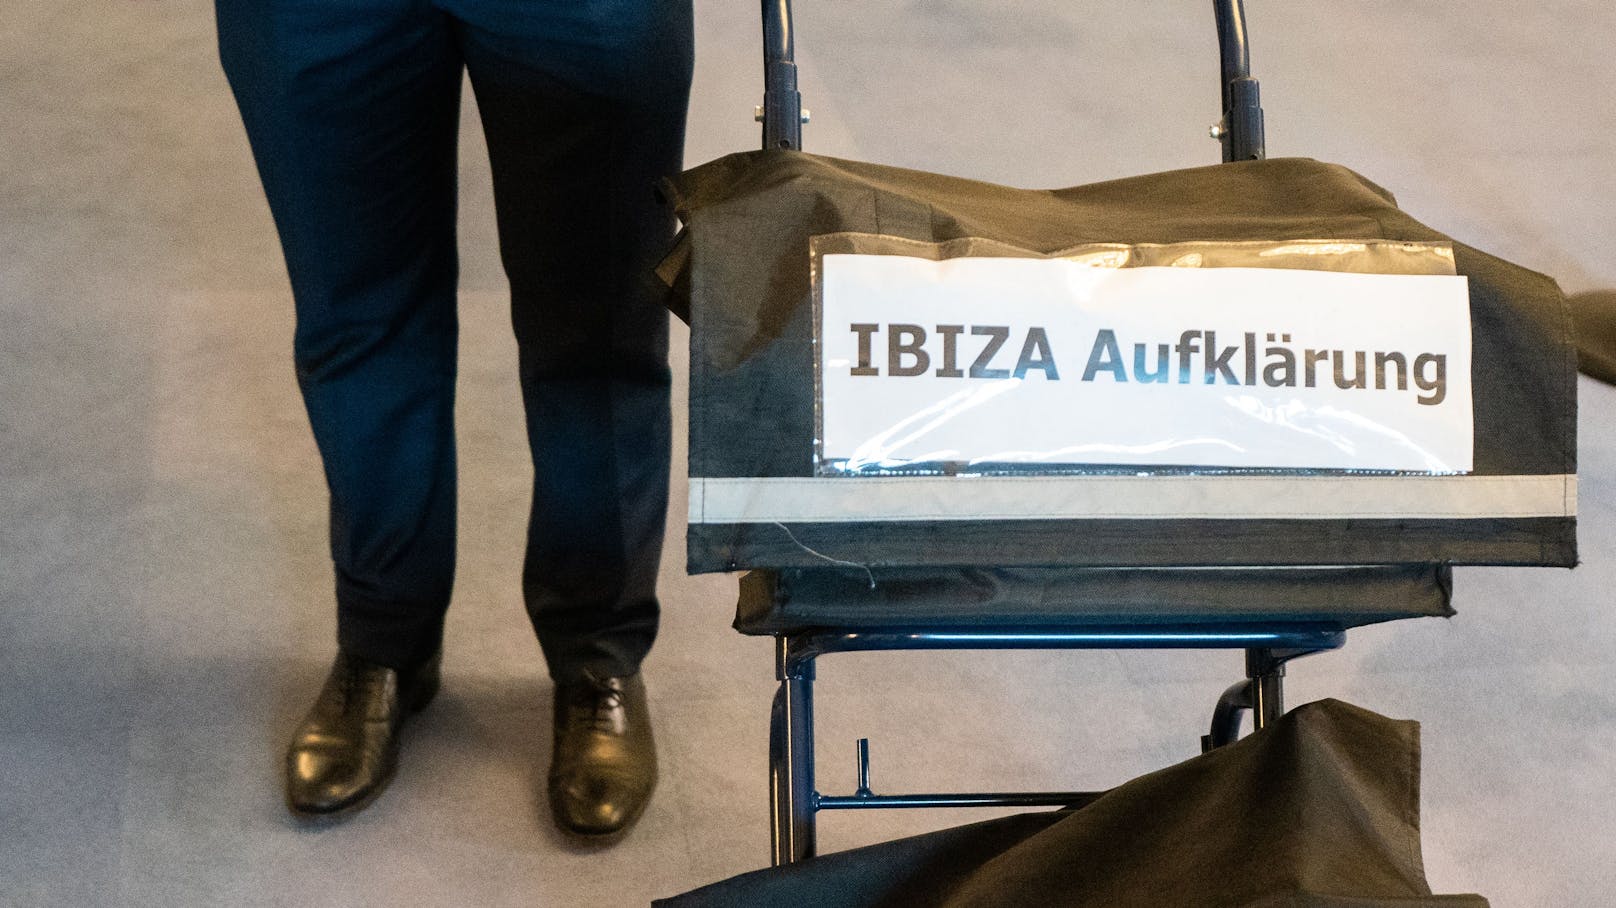 Aktentaschen mit der Aufschrift "Ibiza-Aufklärung" und "Ein weiterer verlorener Tag?" am  30. September 2020 im Rahmen des Ibiza-U-Ausschusses